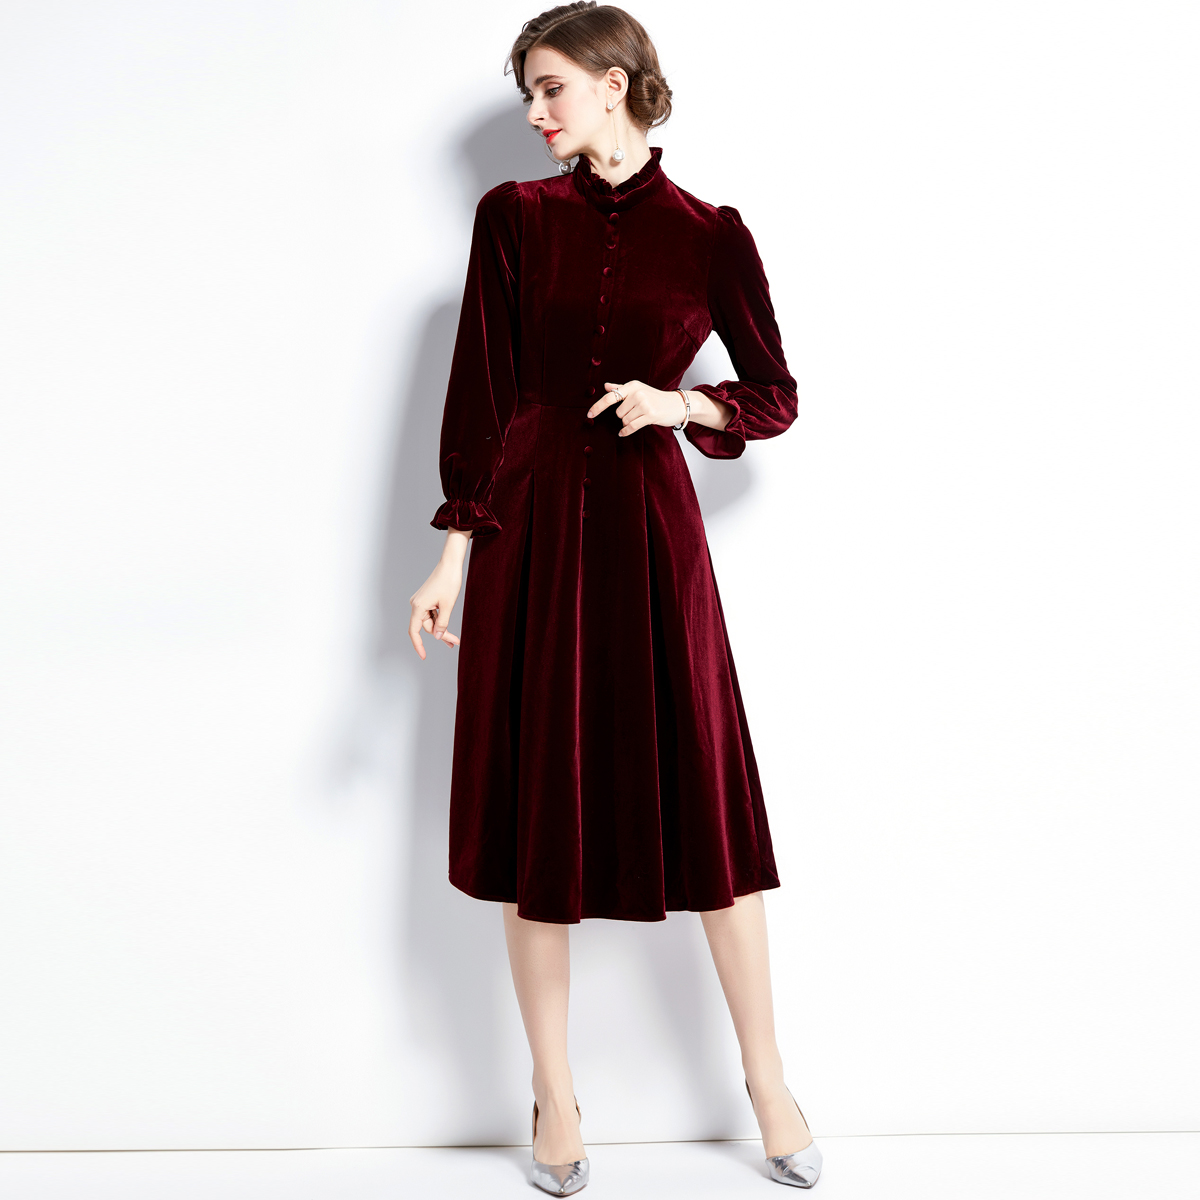 Lined velvet court style autumn dress